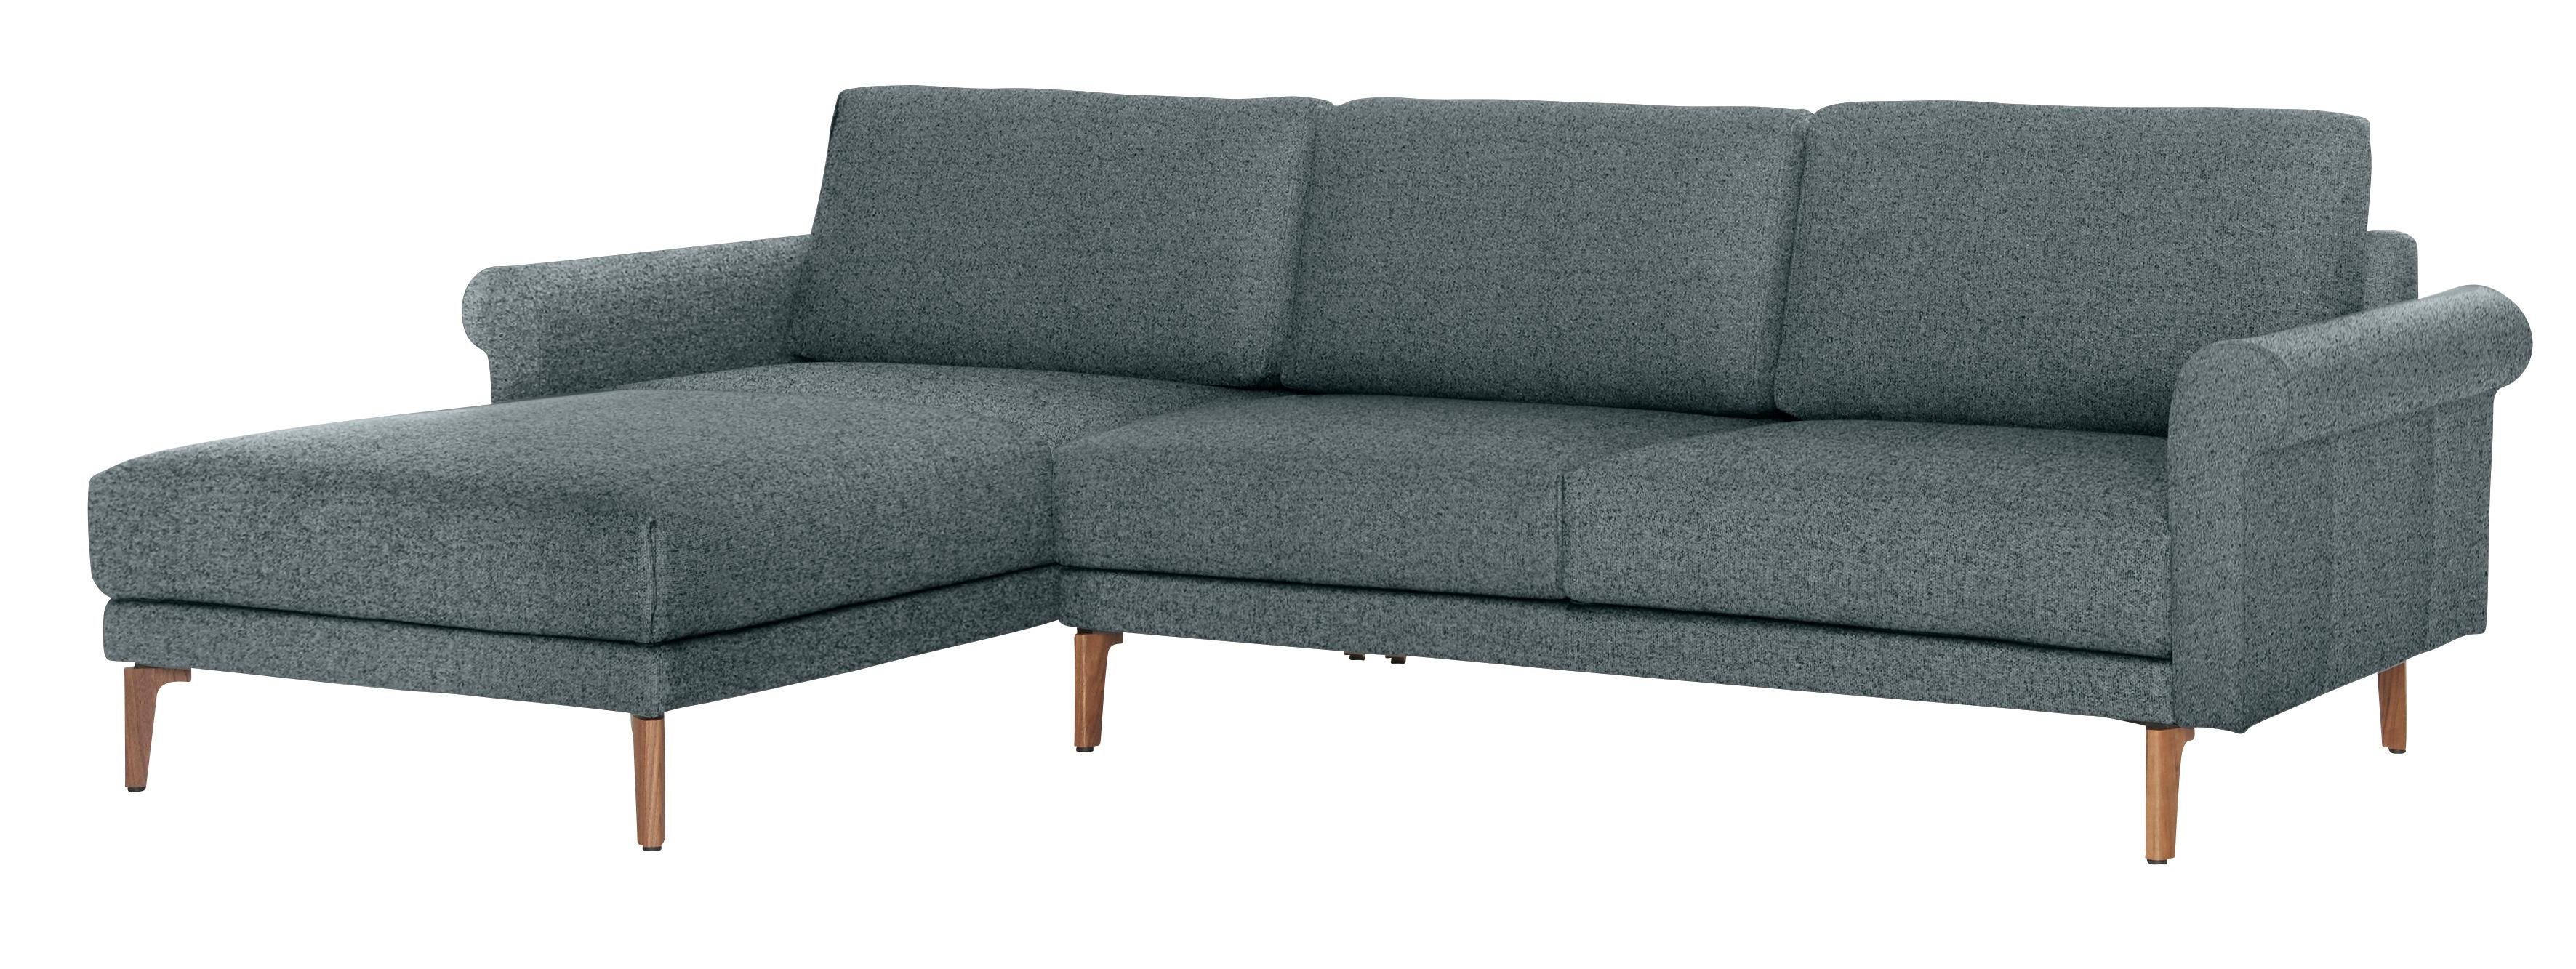 Armlehne sofa hs.450, cm, 282 Landhaus, hülsta modern Schnecke Breite Ecksofa Nussbaum Fuß